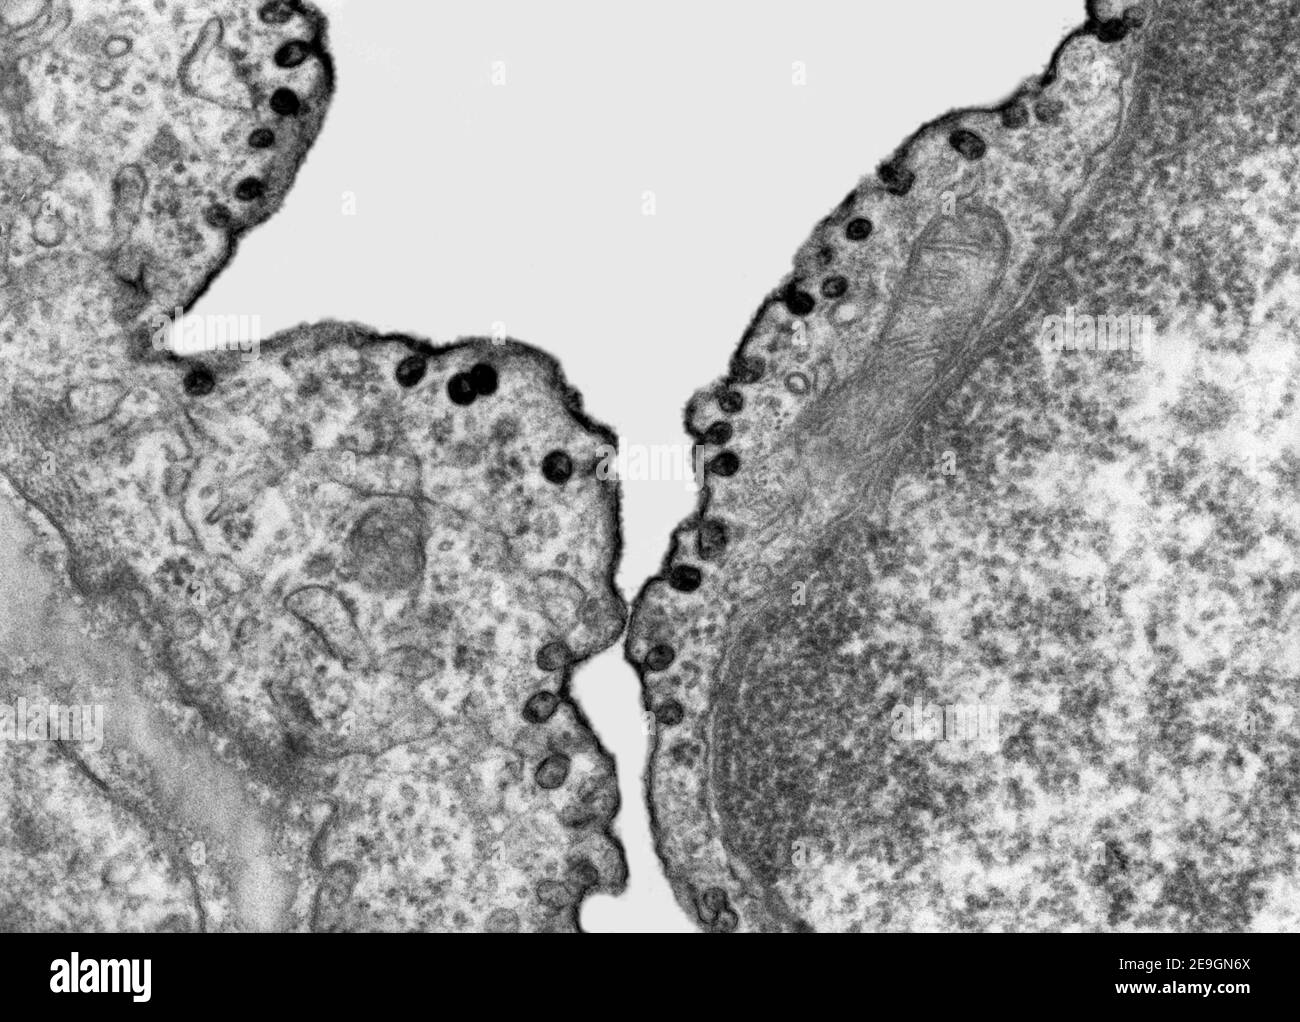 Microscope électronique à transmission (TEM) micrographe montrant le marquage des vésicules de la pinocytose avec un marqueur dense aux électrons, le rouge de ruthénium. Banque D'Images